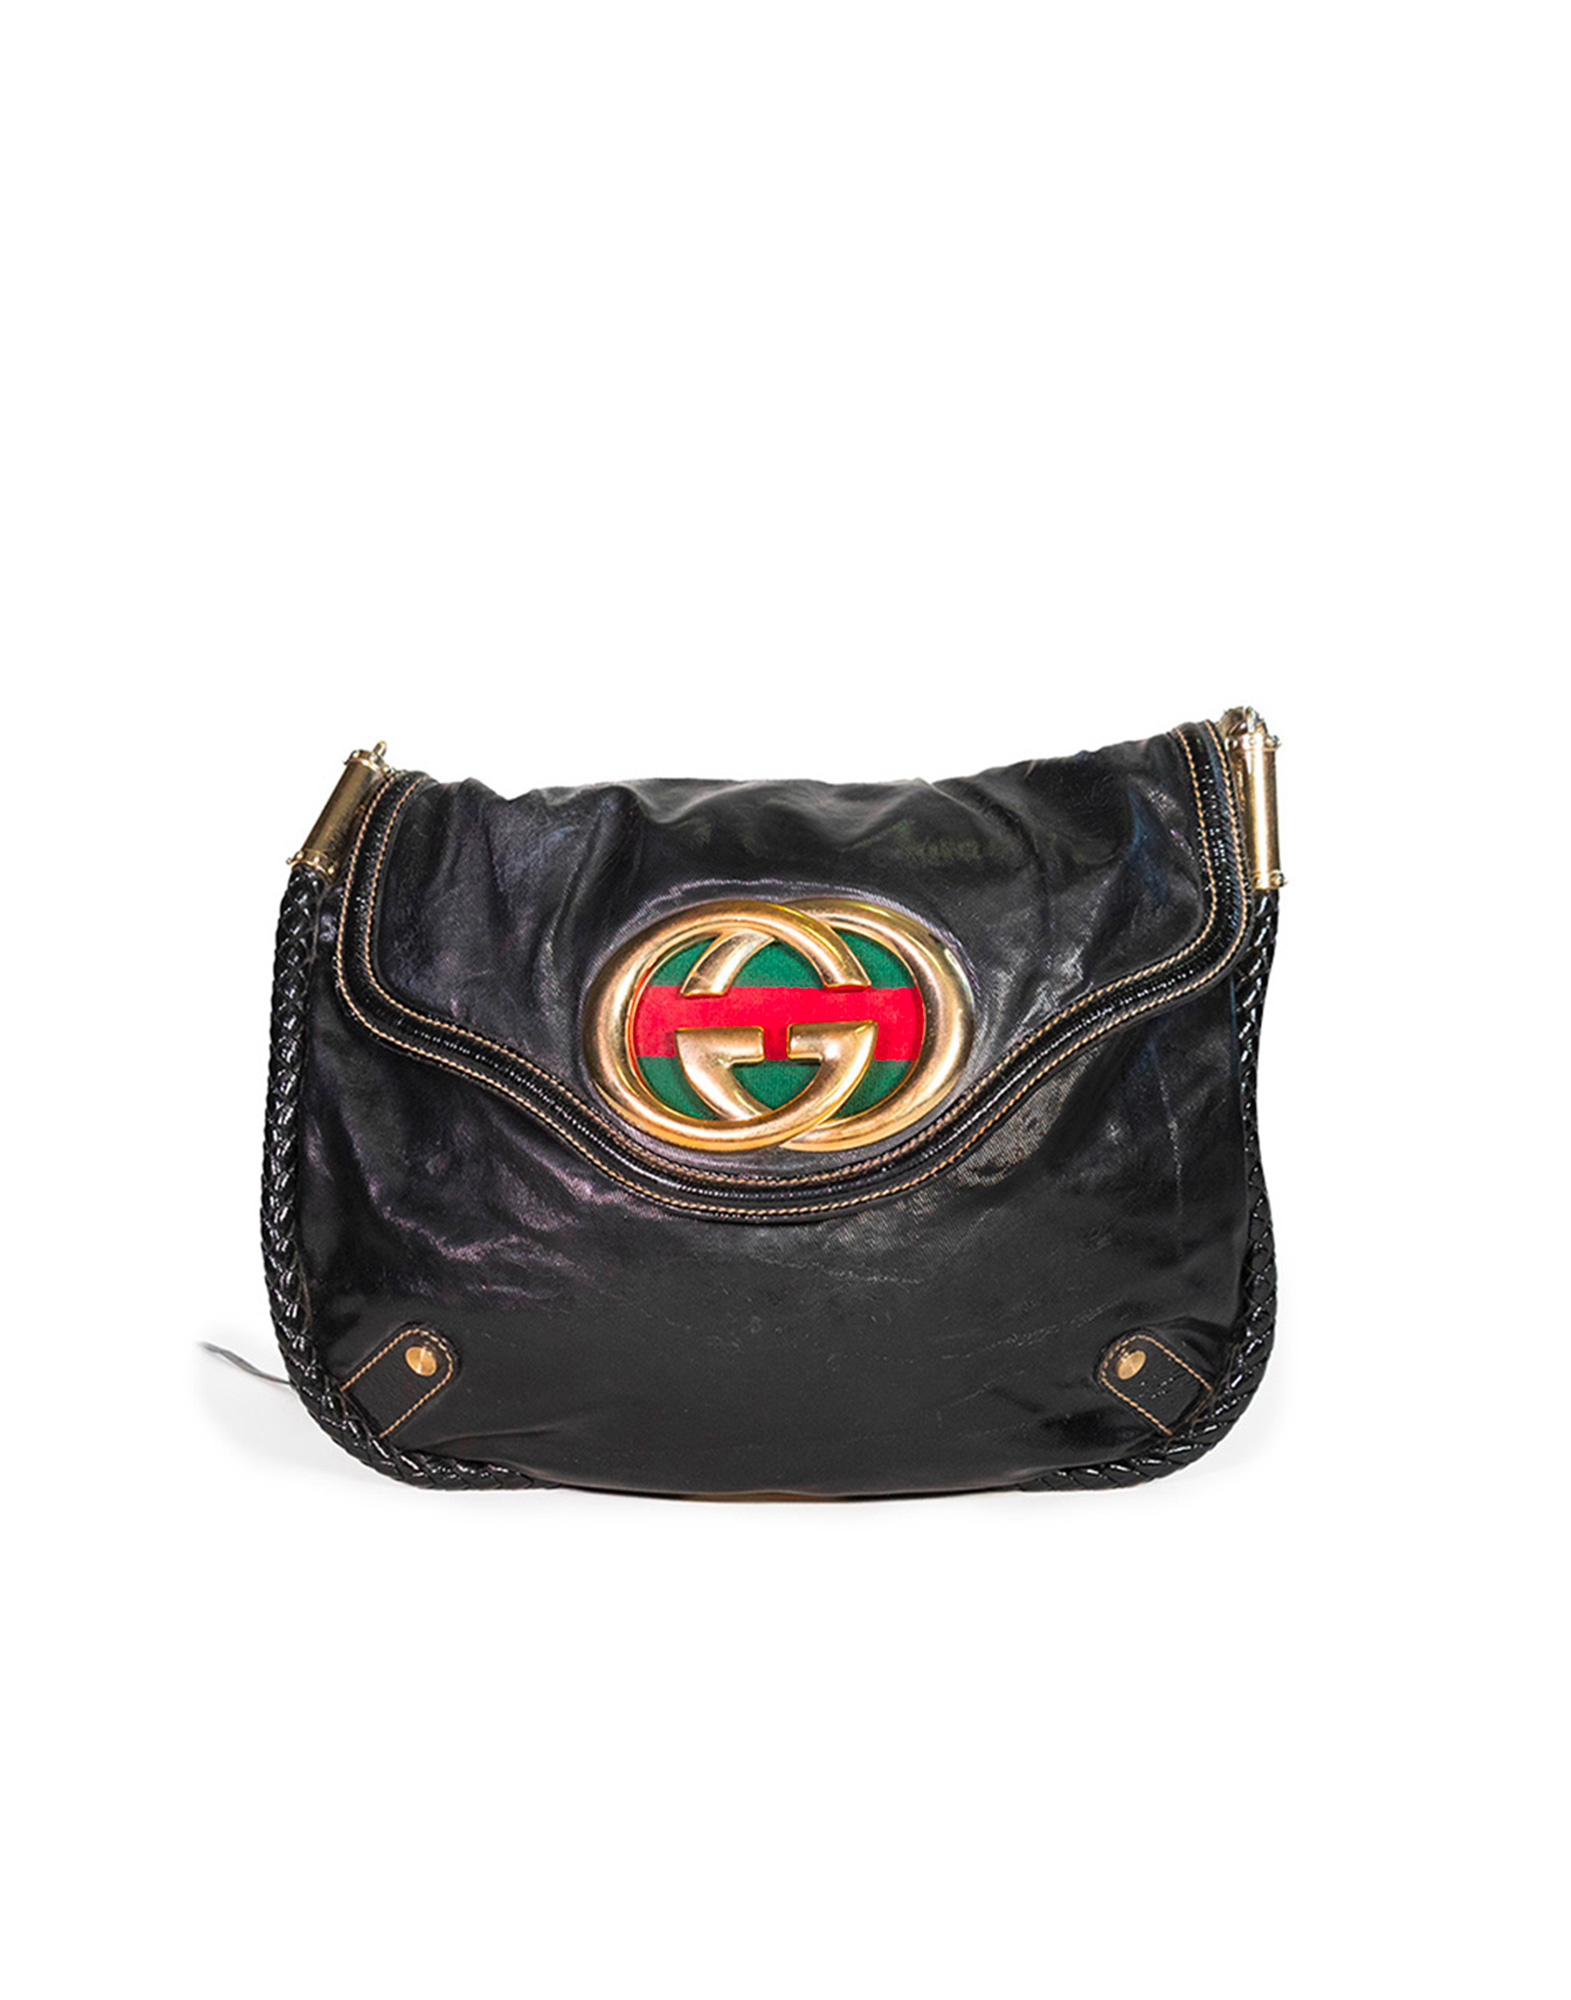 Gucci - Britt bag in patent leather